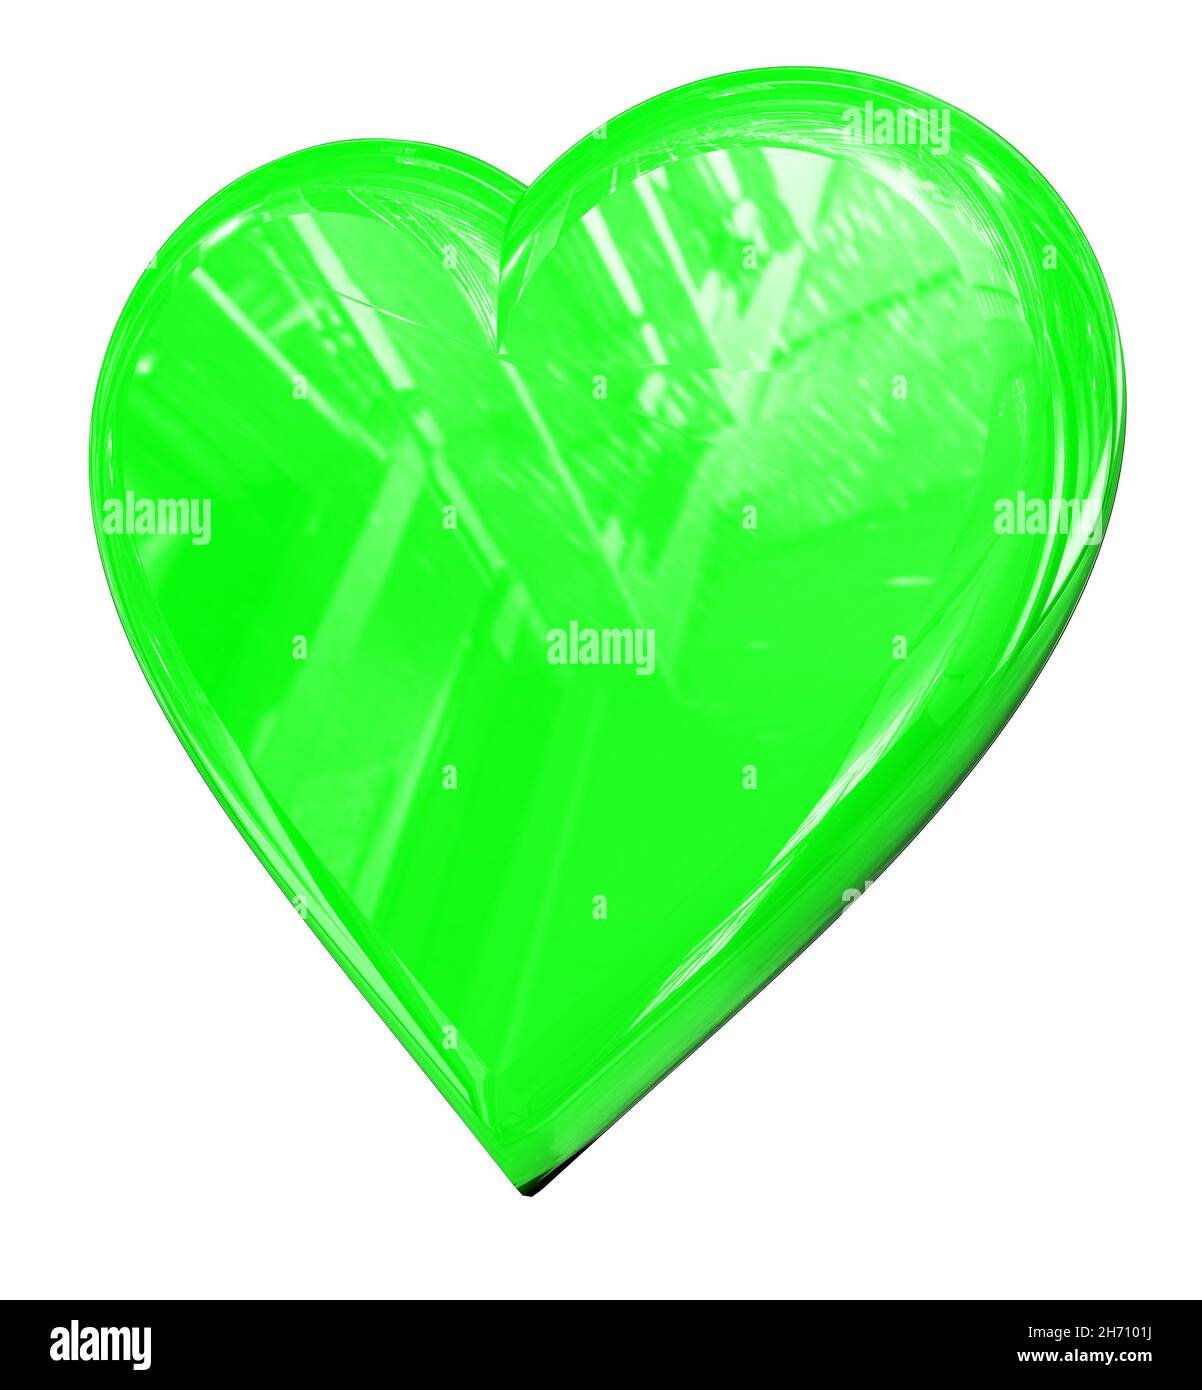 Forme du cœur - icône de symbole de signe vert brillant - rendu 3d Banque D'Images